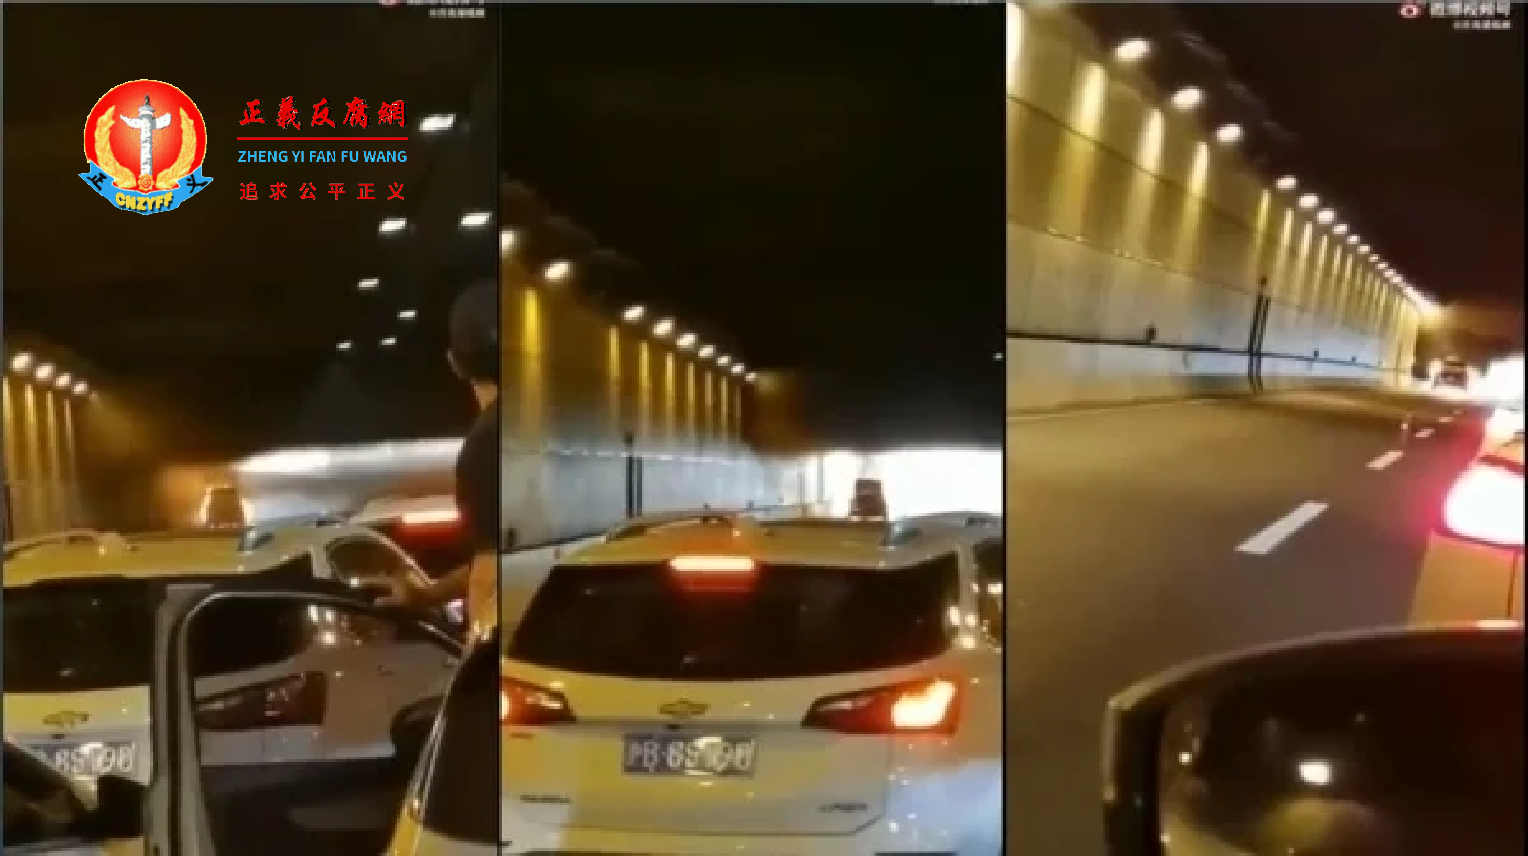 上海中环隧道一轿车起火，疑似有女子被困车内惨叫却无人施救.png